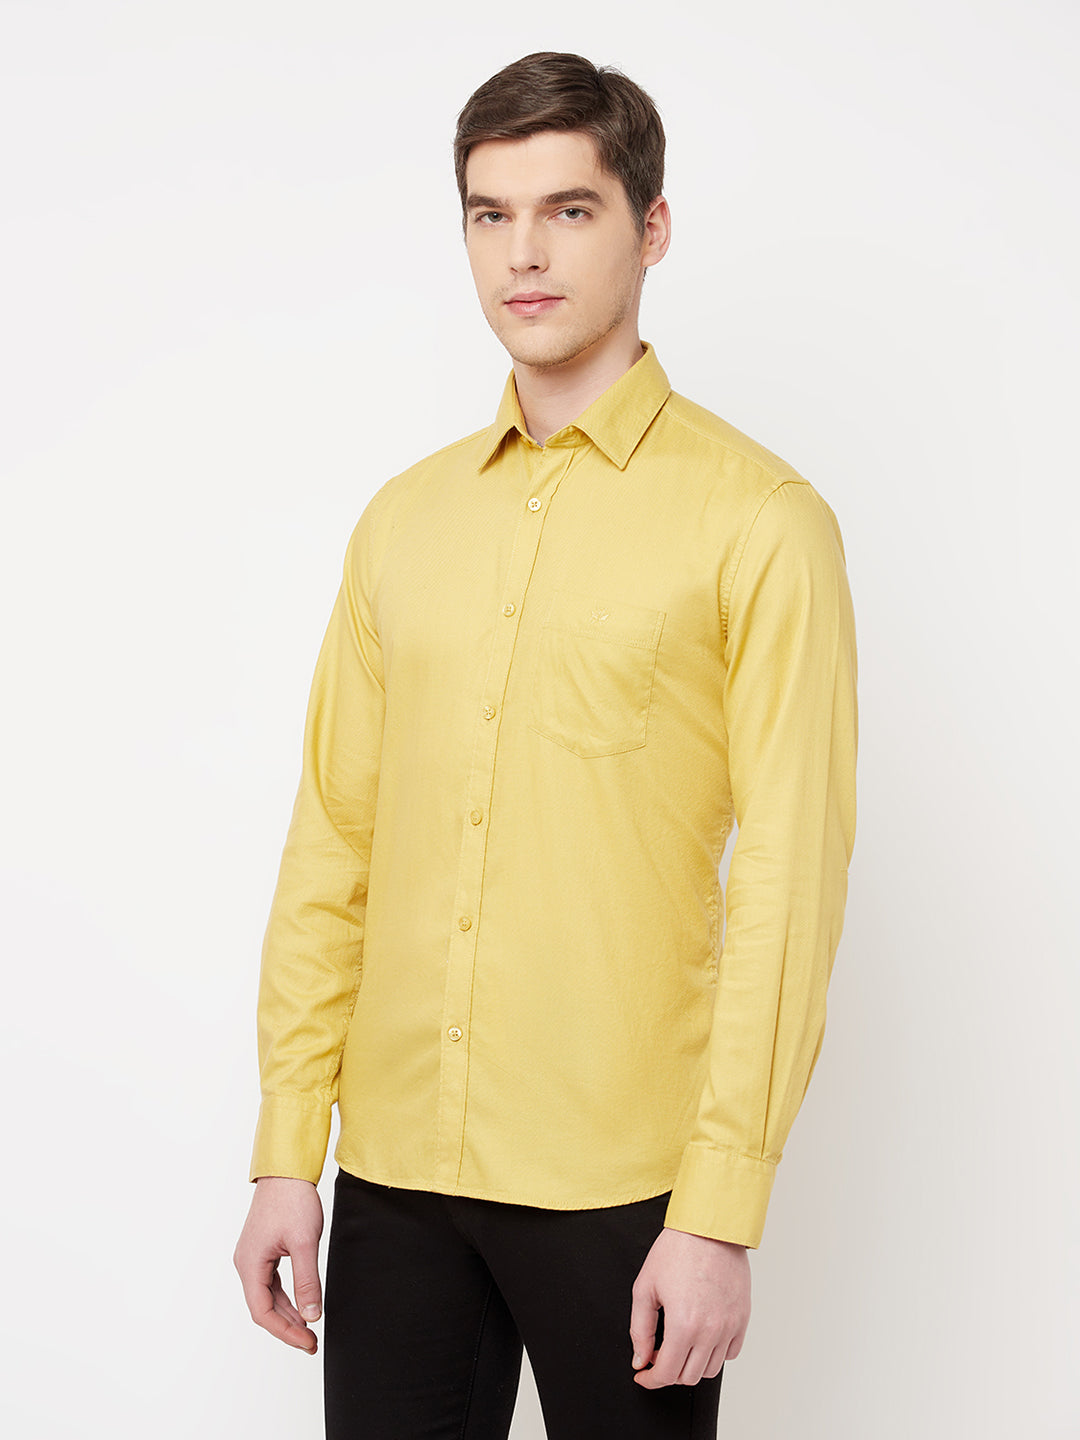 Yellow Casual Shirt - Men Shirts